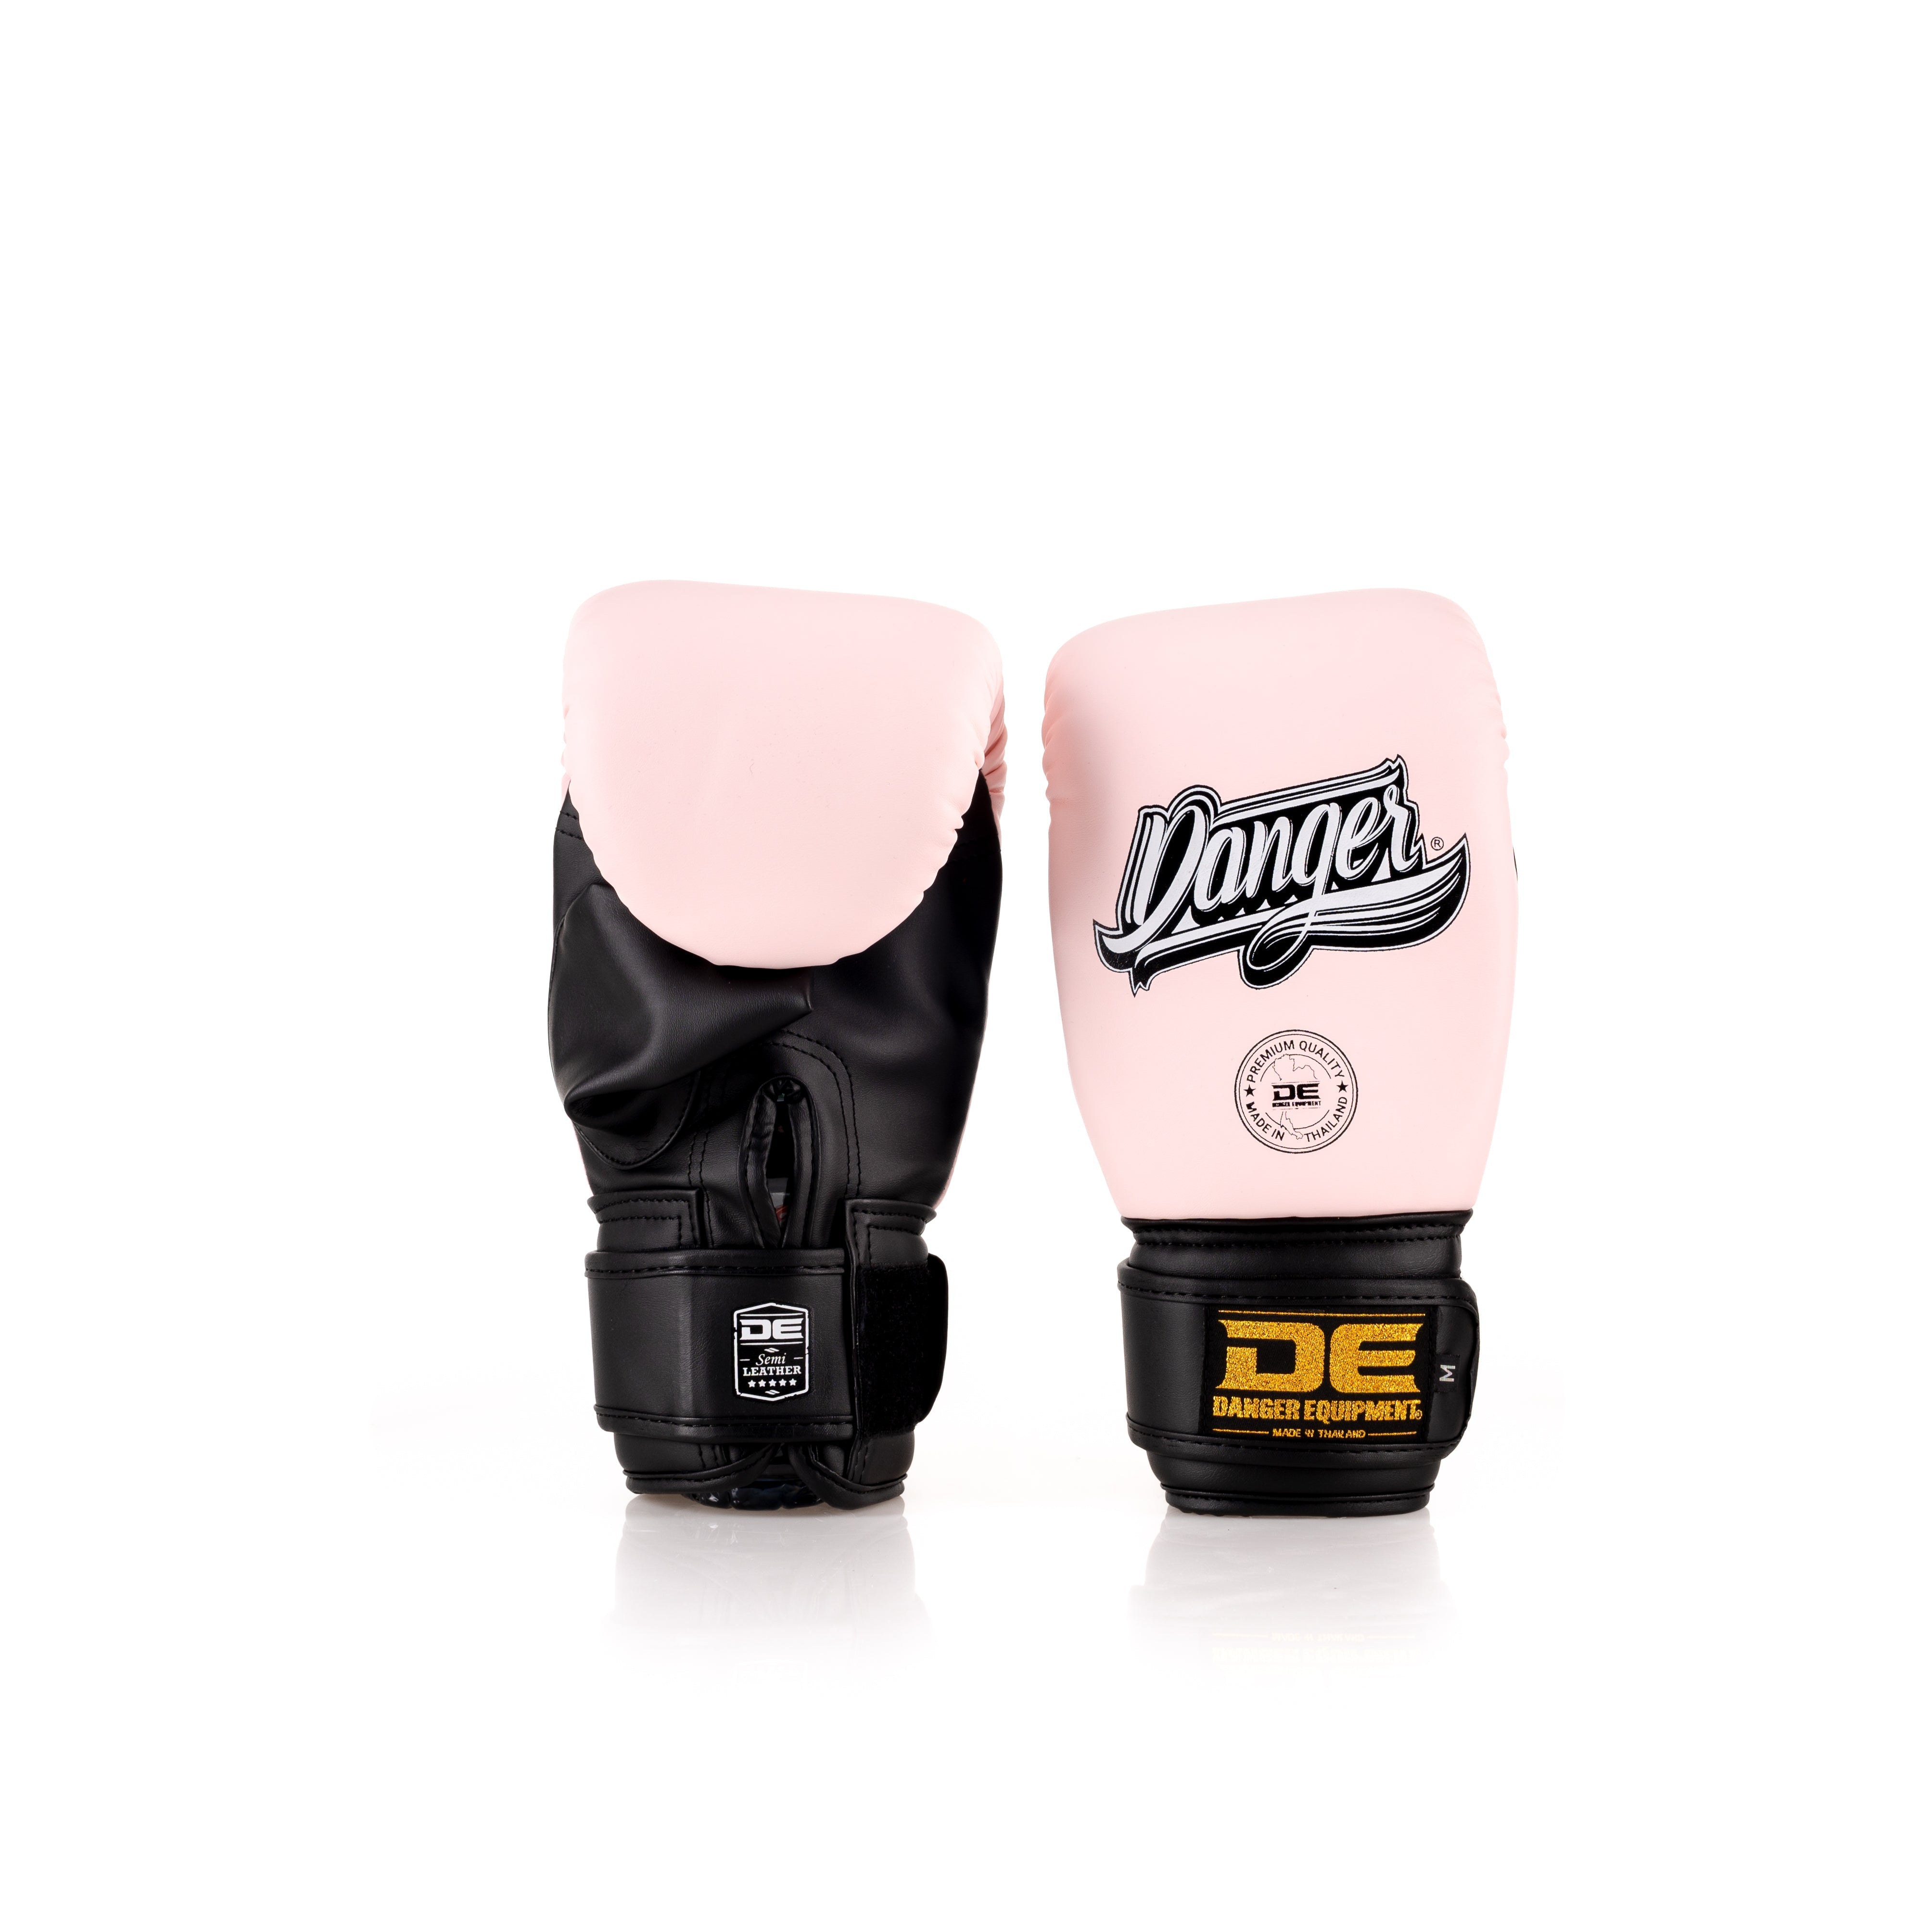 Black/Pink Danger Equipment Bag Boxing Gloves Front/Back